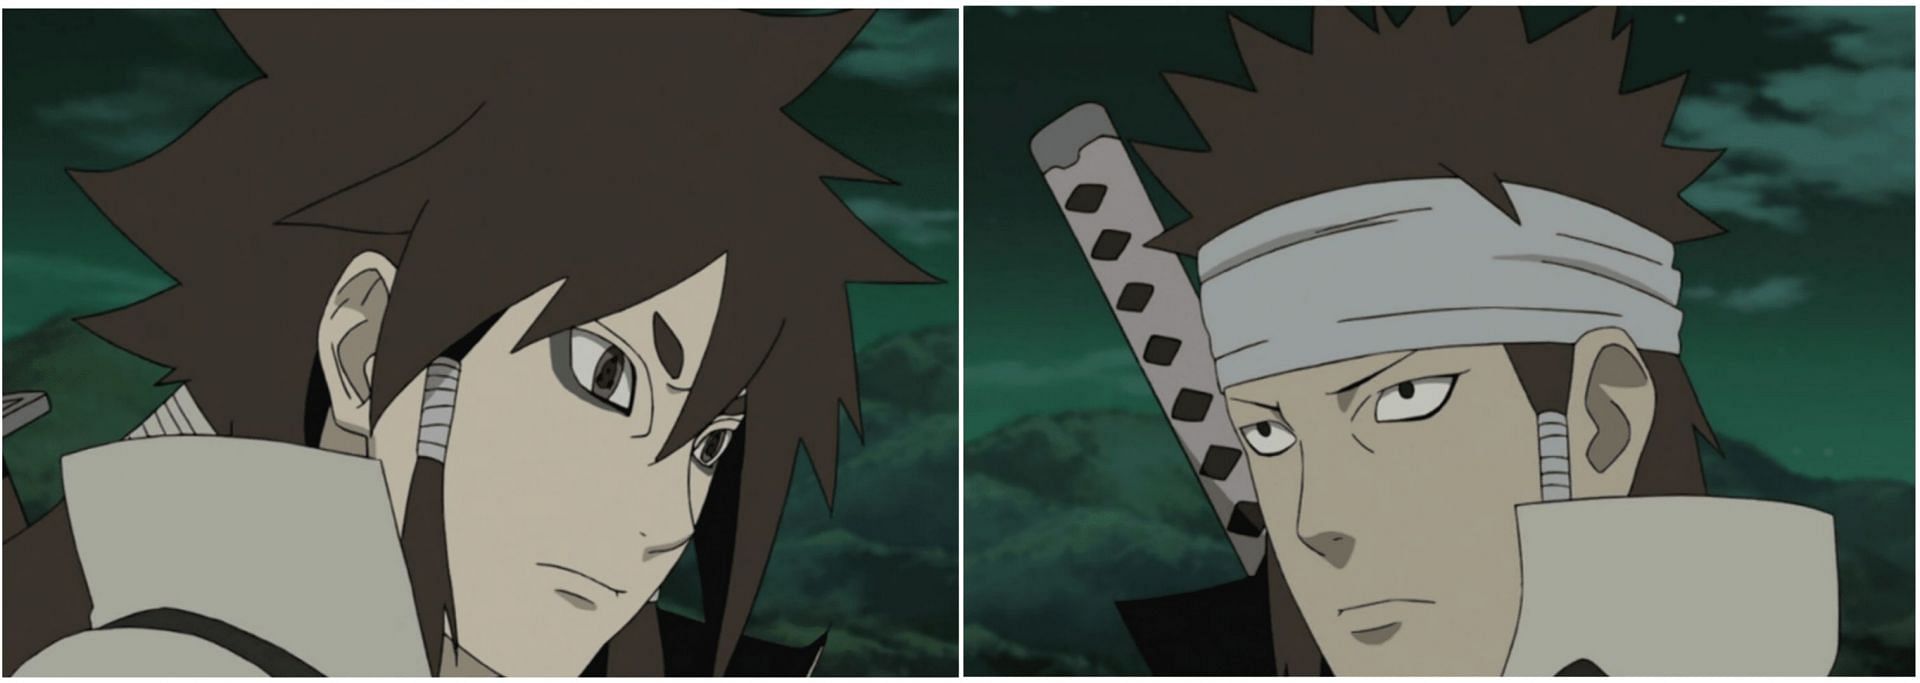 Indra and Ashura Otsutsuki in Naruto (Image via Sportskeeda)